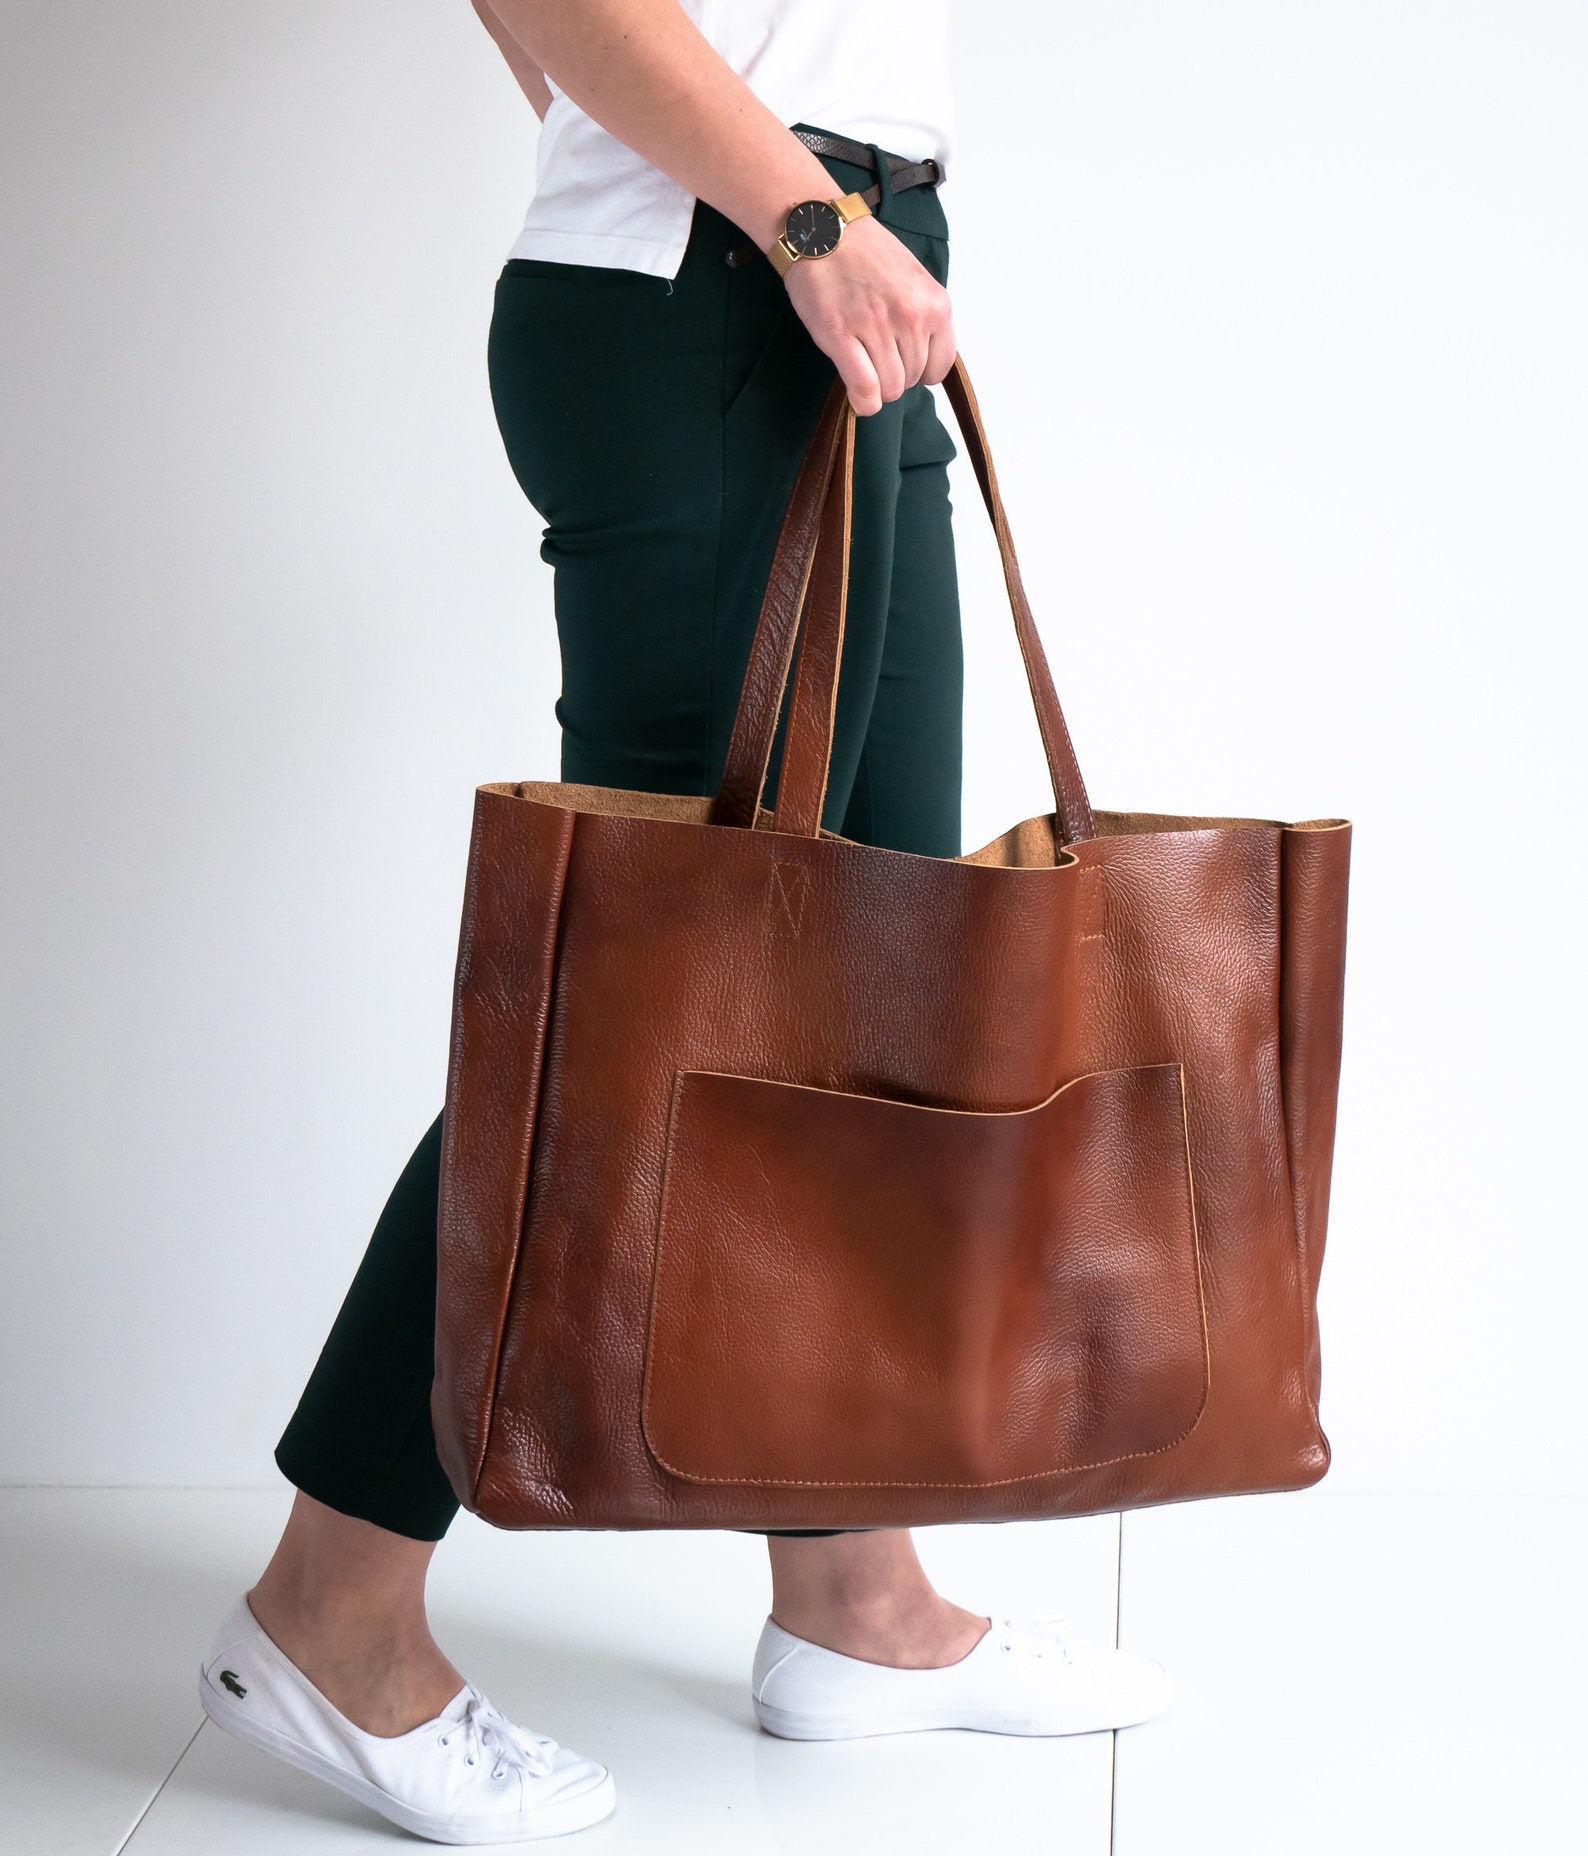 BIG SHOULDER BAG Cognac Brown Leather Bag Large Leather - Etsy